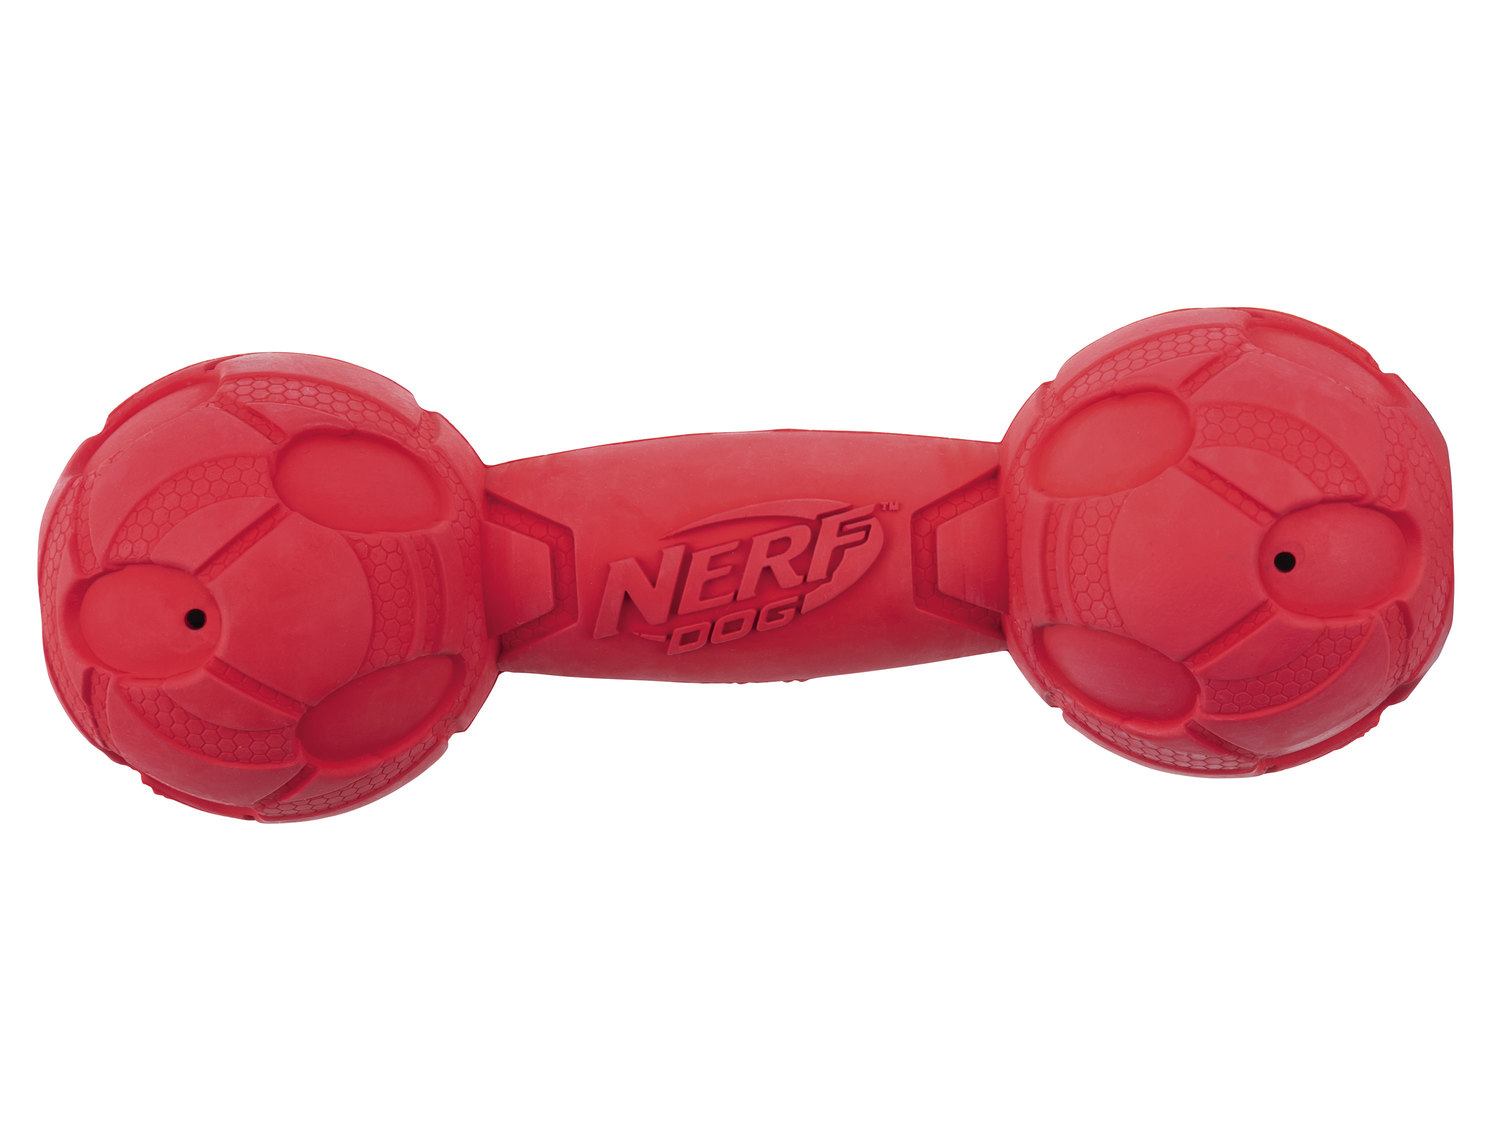 Zabawka dla psa Nerf, cena 24,99 PLN  
3 rodzaje